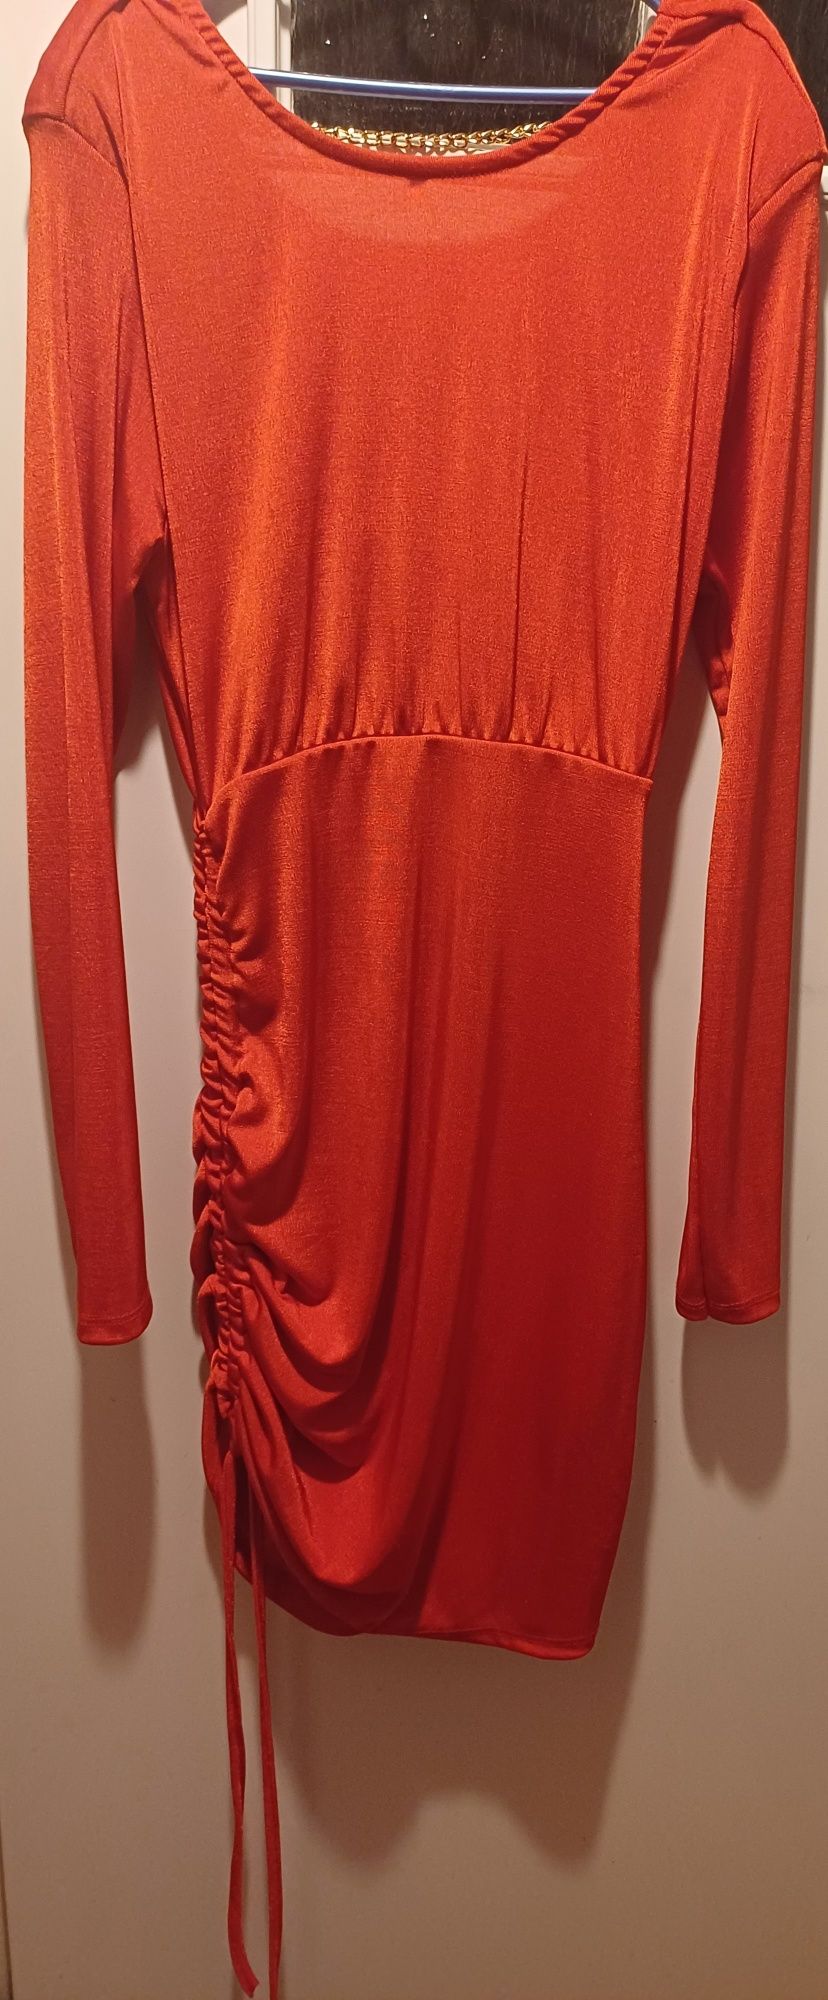 Czerwona sukienka z pięknym tyłem